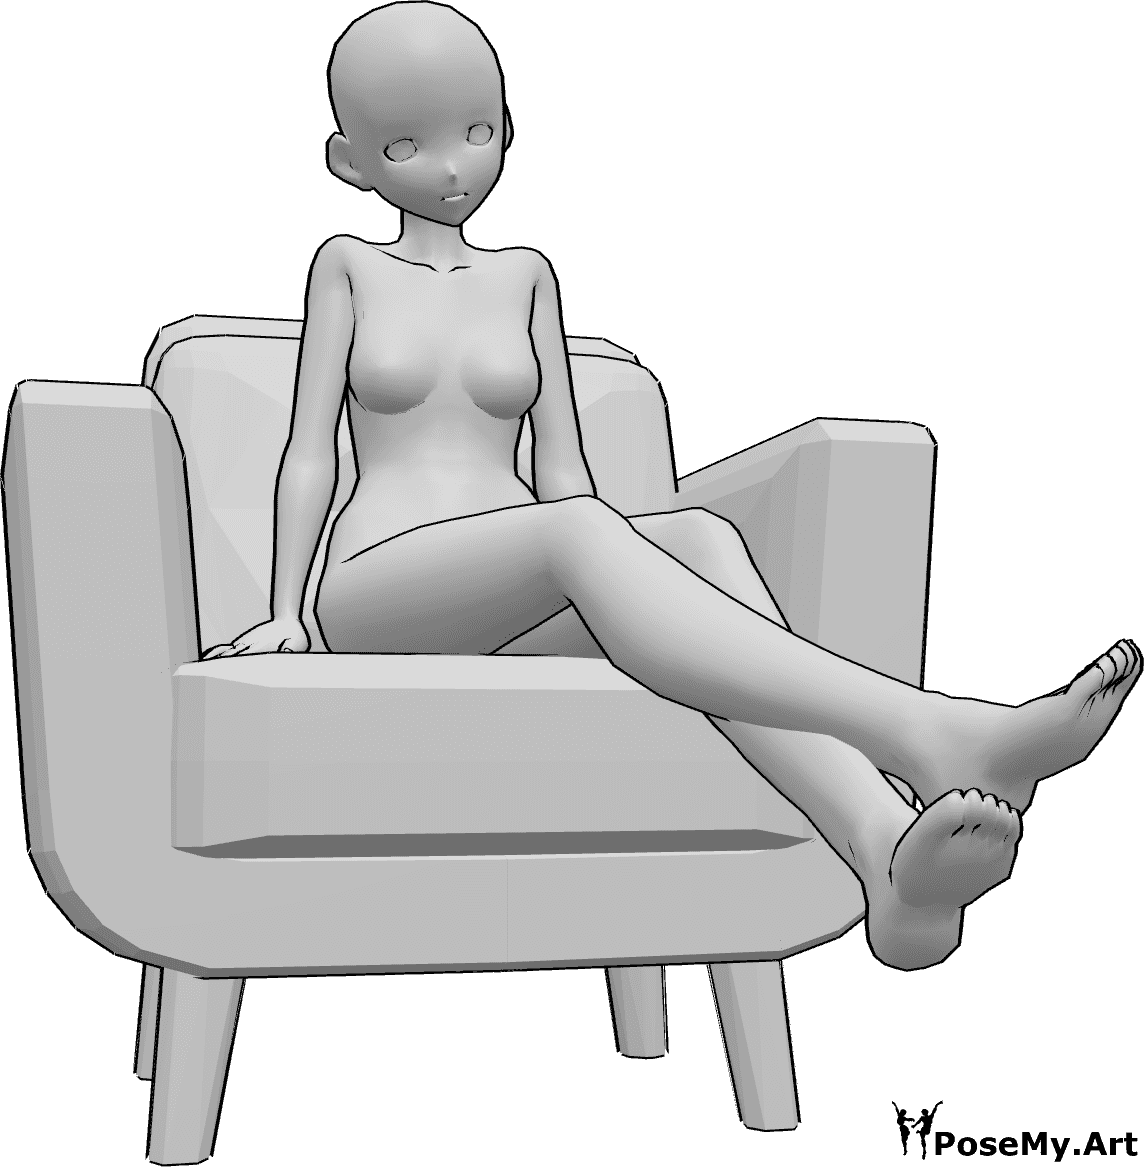 Referencia de poses- Anime levantando las piernas - La mujer anime está sentada en el sillón y levanta las piernas